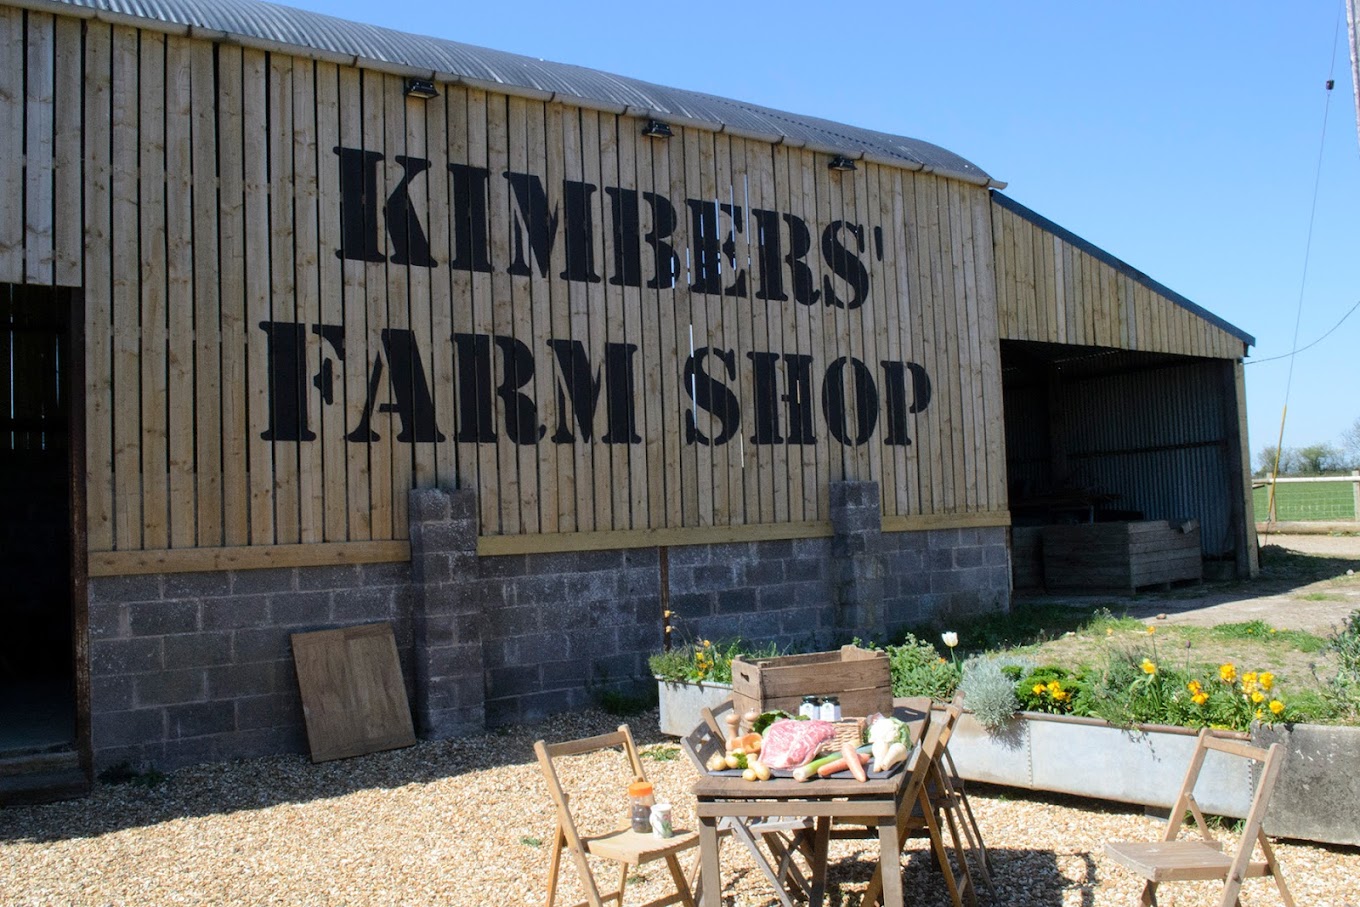 Kimbers’ Farm Shop